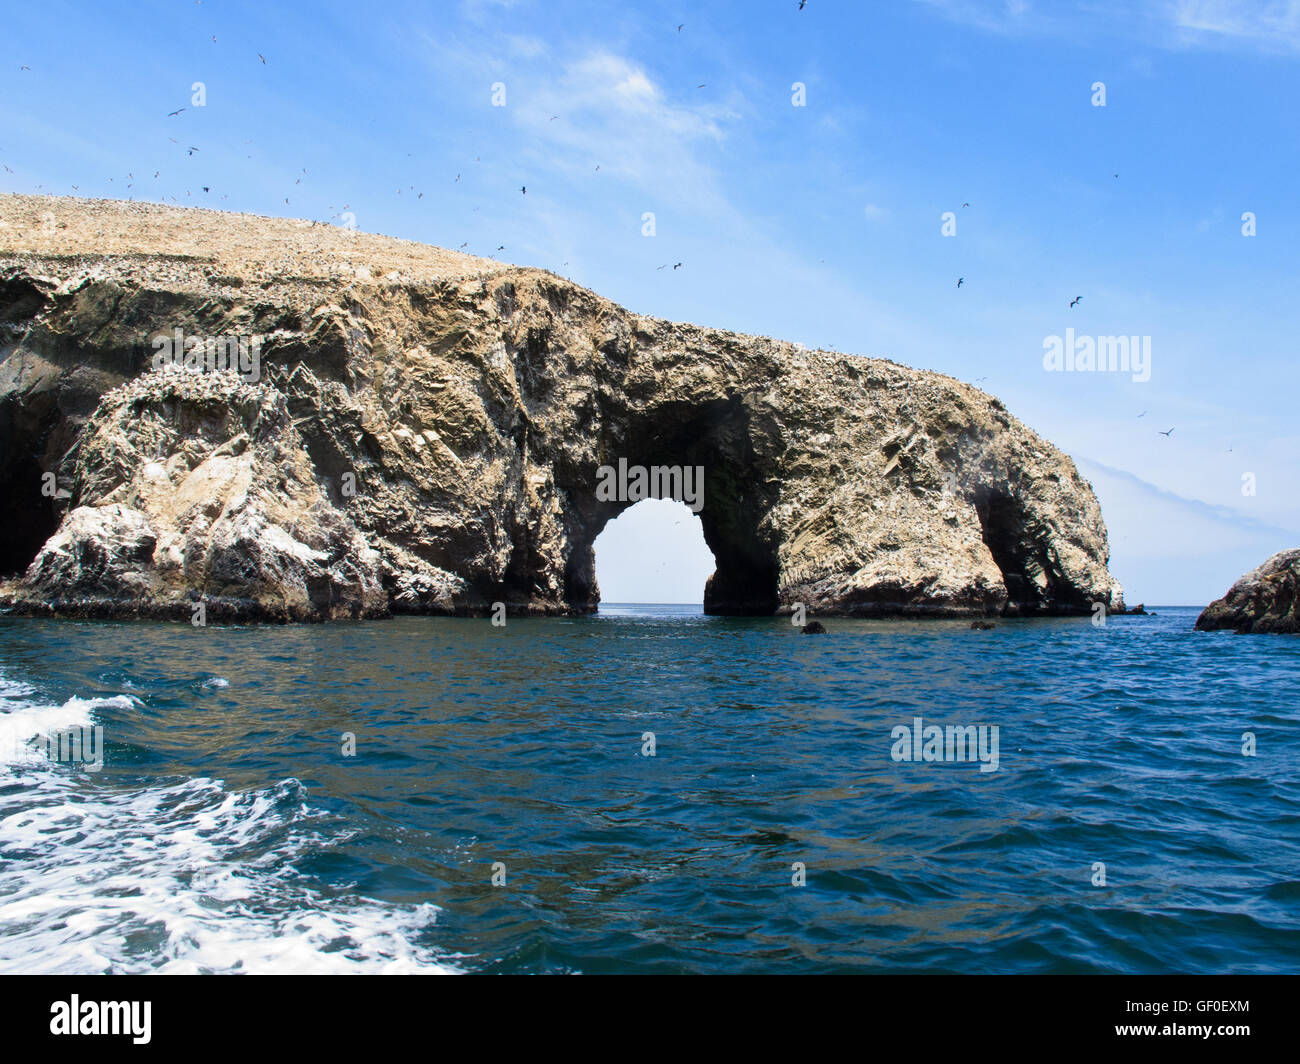 Arco de roca en Islas Ballestas Foto de stock